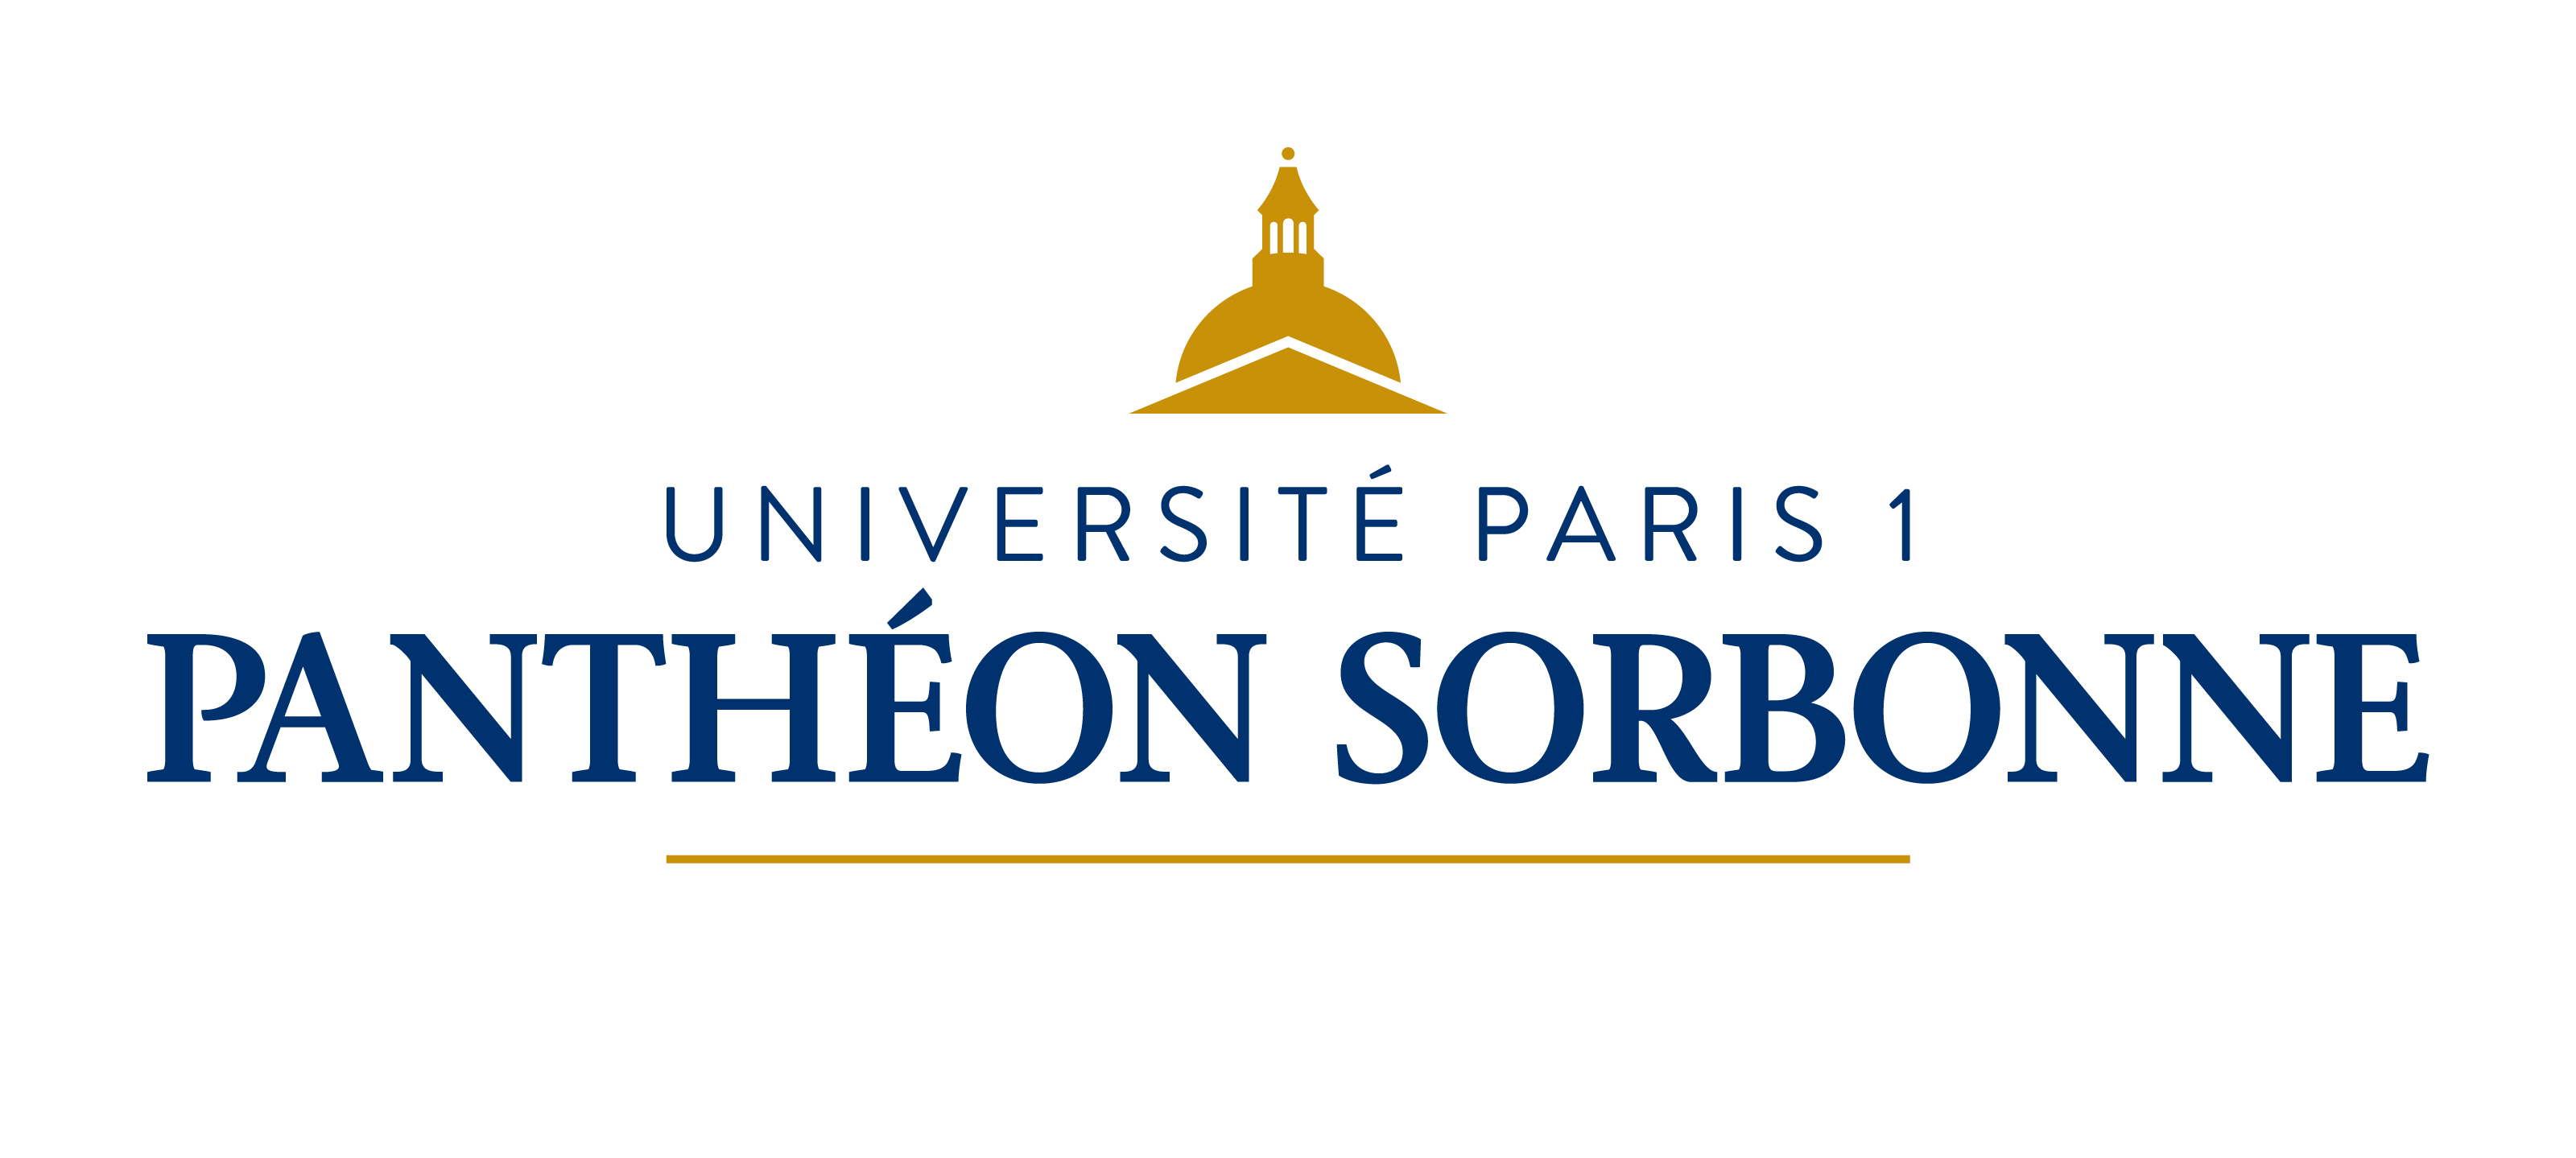 Université Paris 1 Panthéon-Sorbonne (Coordinator), France